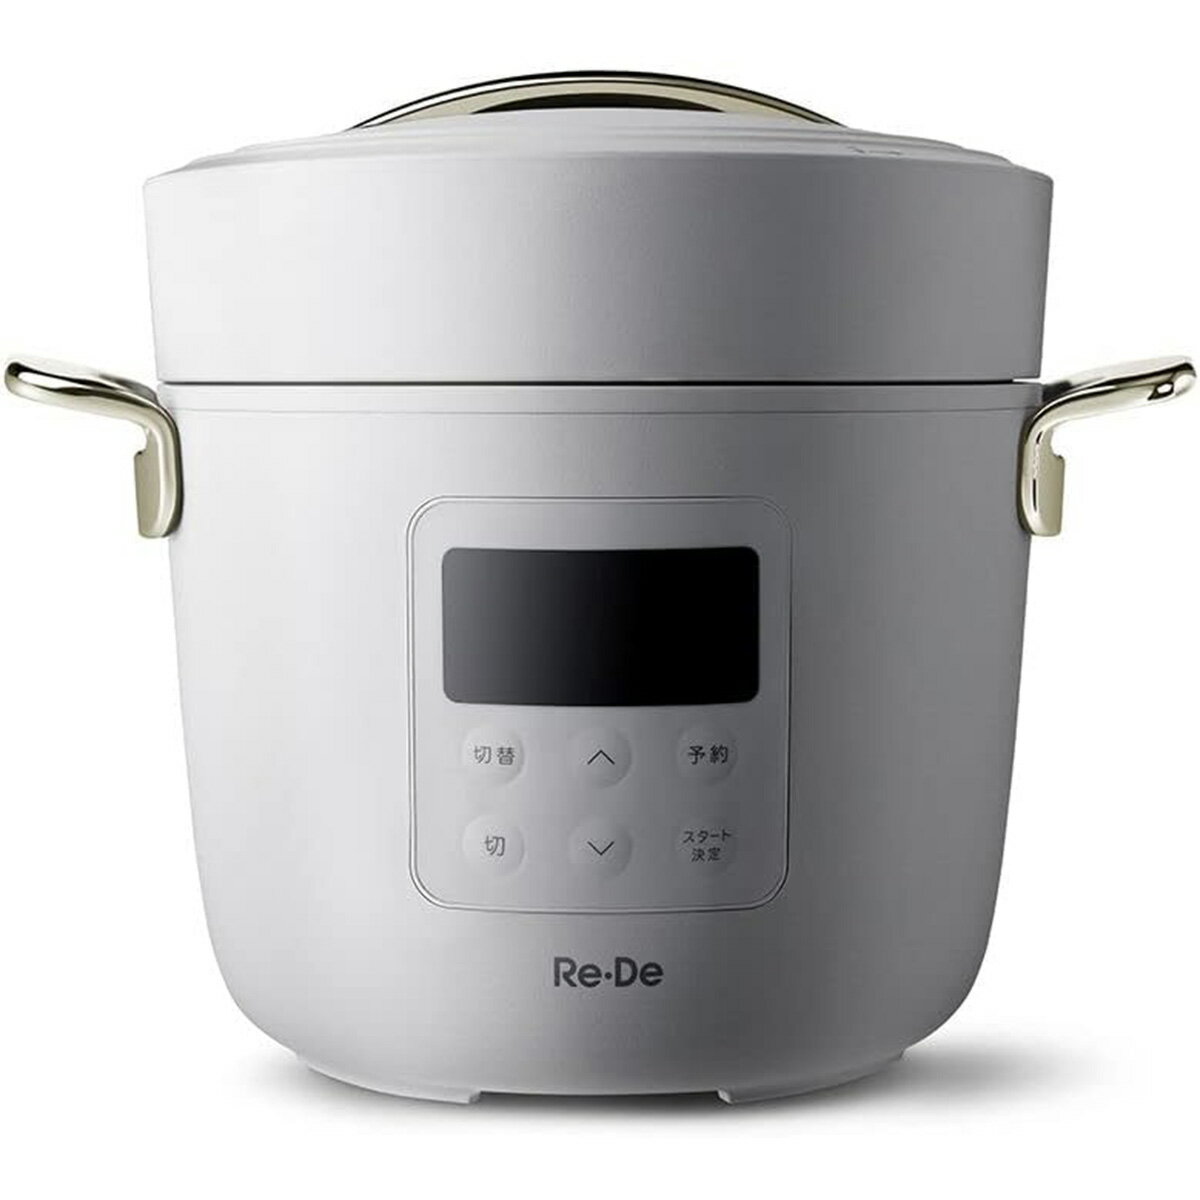 たった25分で、毎日特別ごはん Re・De Potは毎日の食卓を特別にする電気圧力鍋。密閉構造と高温調理で、ごはんなら25分でふっくら炊きあがります。本格料理もボタン一つで完成を待つだけ。作る人、食べる人にも楽しい食事のスタイルをRe・De Potが提供します。 3つの調理機能 圧力調理・・・時間のかかる豚の角煮やビーフシチューでも、あっという間に、やわらかく。スロー調理・・・火加減の難しいロールキャベツも、一定温度で調理できるRe・De Potにおまかせ。※ 設定温度は、40~100℃温め調理・・・作り置きの料理を温め直します。※スープ・カレーなど汁気のあるものが温めに適しています。 たった25分でふっくらご飯 高温で一気に炊き上げることで、ムラなく粒立ちがしっかりしたご飯に。高圧での吸水・蒸らしにより、25分でもふっくら美味しく炊き上げます。 おいしい、ヘルシーな無水カレーも 密閉構造により、無水調理も実現可能。うま味を凝縮し食材の栄養も逃しません。 【商品の仕様】 カラー ホワイト 定格電圧 AC100V~ 定格周波数 50/60Hz 外形寸法 W288xD222xH244mm 質量 約2.8kg 調理容量 1.2L(4合) 呼び容量(満水容量) 2.0L 電源コード長 1.5m 調理モード 圧力、スロー、温め、自動調理 予約 最大12時間、1時間刻み(圧力調理、炊飯のみ) 使用環境 周囲温度　5-35℃、周囲湿度　20-80%RH(結露なきこと) 付属品 蒸し台×1、計量カップ×1、内がま×1、内ぶた×1、レシピブック×1、電源コード×1、取扱説明書(保証書付き)×1 定格圧力 83kPa 自動メニュー 8種(炊飯、おかゆ、無水カレー、肉じゃが、クリームシチュー、さばの味噌煮、豚の角煮、りんごのコンポート) 【延長保証について】■保証期間はメーカー保証終了から最長4年間（メーカー1年保証と合わせて合計最長5年間）となります。■保証は「正常使用に対して生じた故障」に限り有効です。※対象商品の正常な使用状態（取扱説明書本体貼付ラベル等に記載の注意書等がある場合は、それらに従った使用状態）において、部品、材料または製造上の問題等により生じた故障をいいます。■保証の対象とならない主なケース・(落下や水ぬれ、ペットのいたずらなど)お客さまの故意または過失により生じた一切の損害・天災または不可抗力(地震、噴火及び津波を含みますがこれらに限りません。)により生じた損害。・盗難、紛失・置忘れ、詐欺・横領など、第三者の加害行為による損害。・付属品類、周辺機器、ソフトウェア、アクセサリー等本体以外の付属品に単独で生じた故障。※延長保証の詳細はTOPページ延長補償のご案内をご覧ください。電気圧力鍋 ReDePot 電子圧力鍋 リデポット おしゃれ シンプル デザイン ギフト プレゼント 結婚祝い 引っ越し祝い お祝い かわいい 可愛い 炊飯器 無水カレー 煮込み 時短 簡単 一人暮らし 二人暮らし